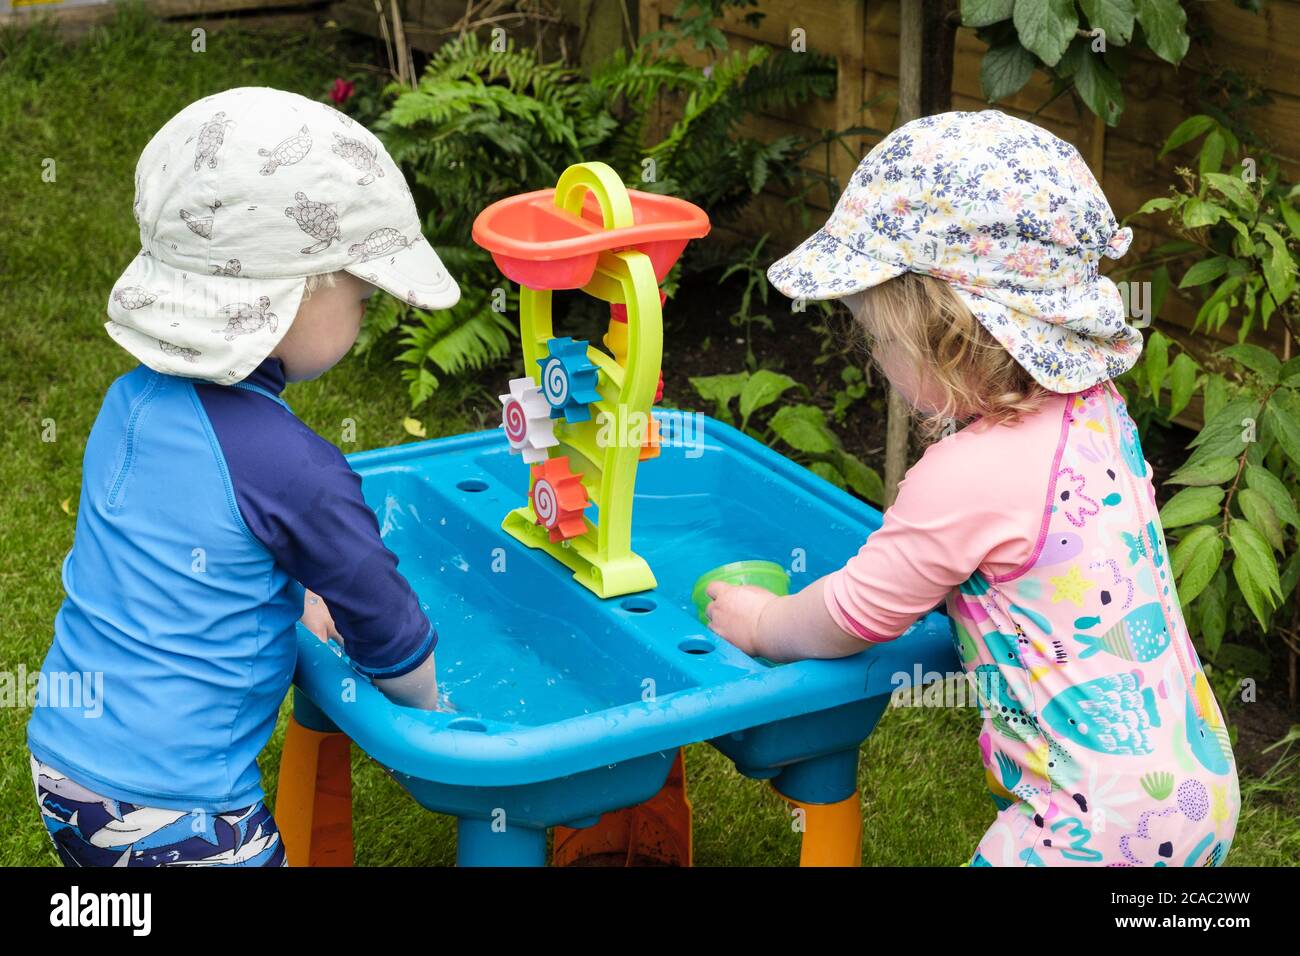 Authentisches Bild von Kleinkind Zwillinge Kleinkinder Vorschulkinder Kinder spielen im Wasser mit Spielzeug im Freien in einem Garten im Sommer. England Großbritannien Stockfoto